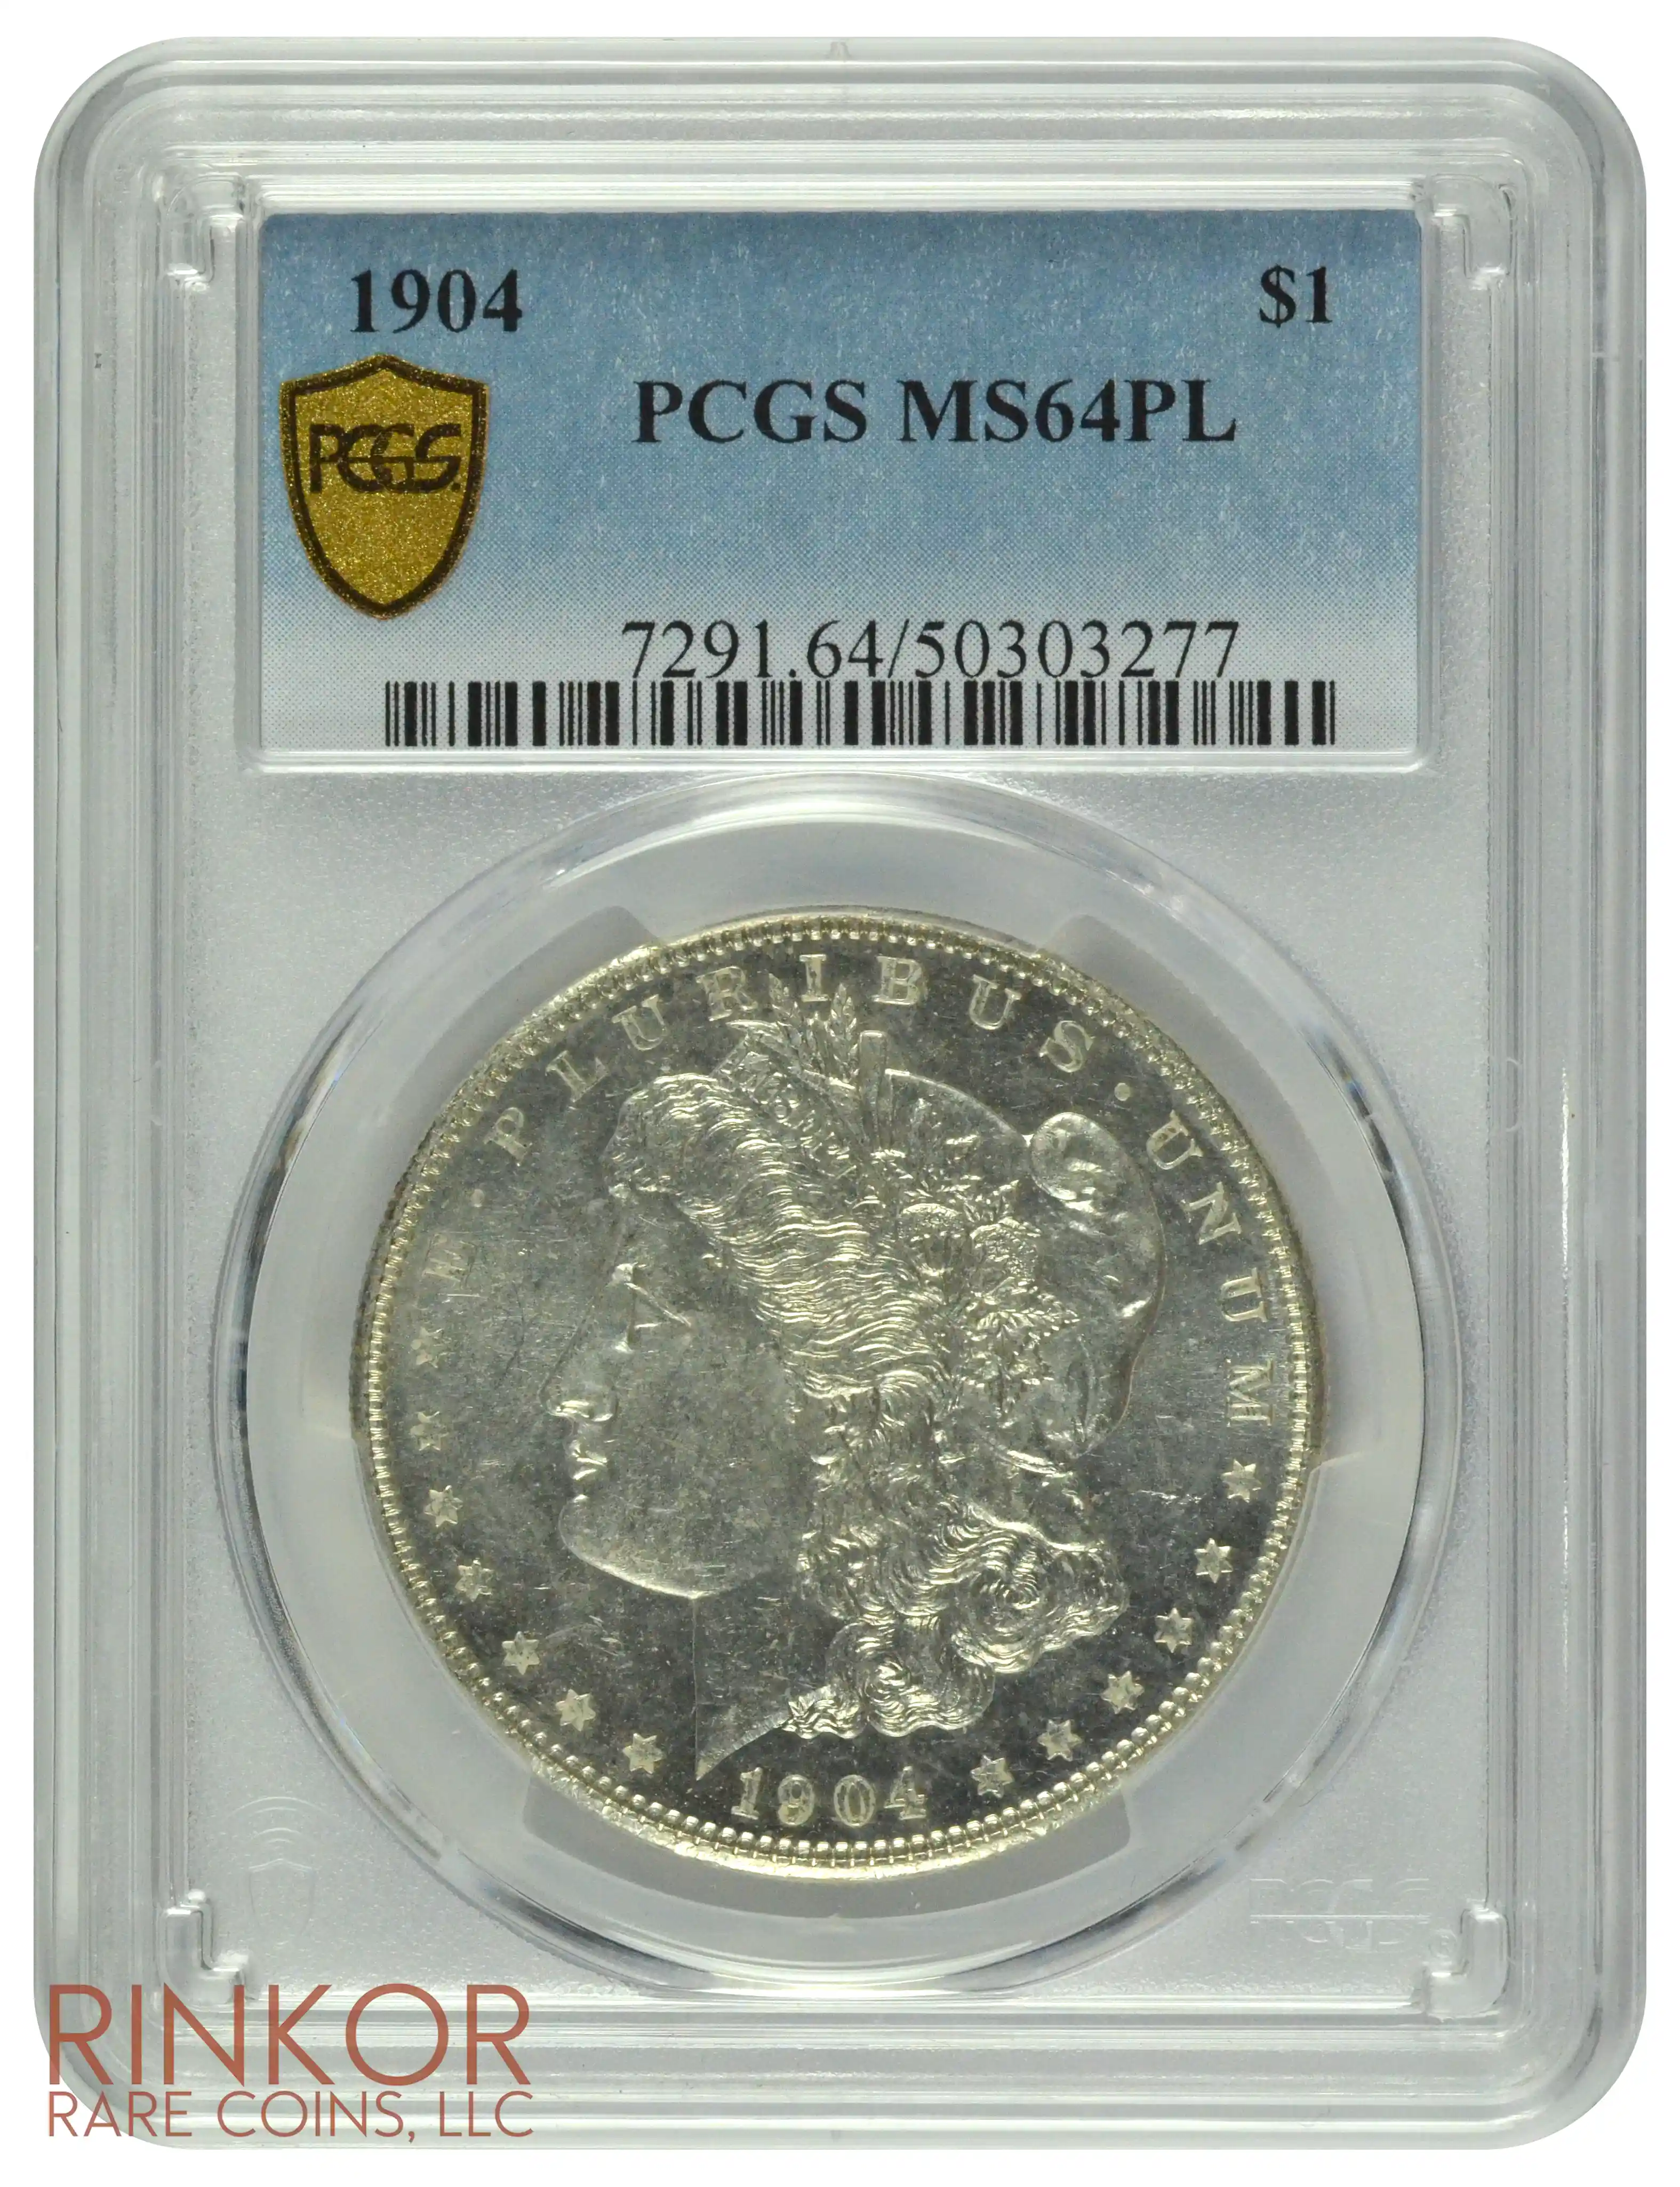 1904 $1 PCGS MS 64 PL